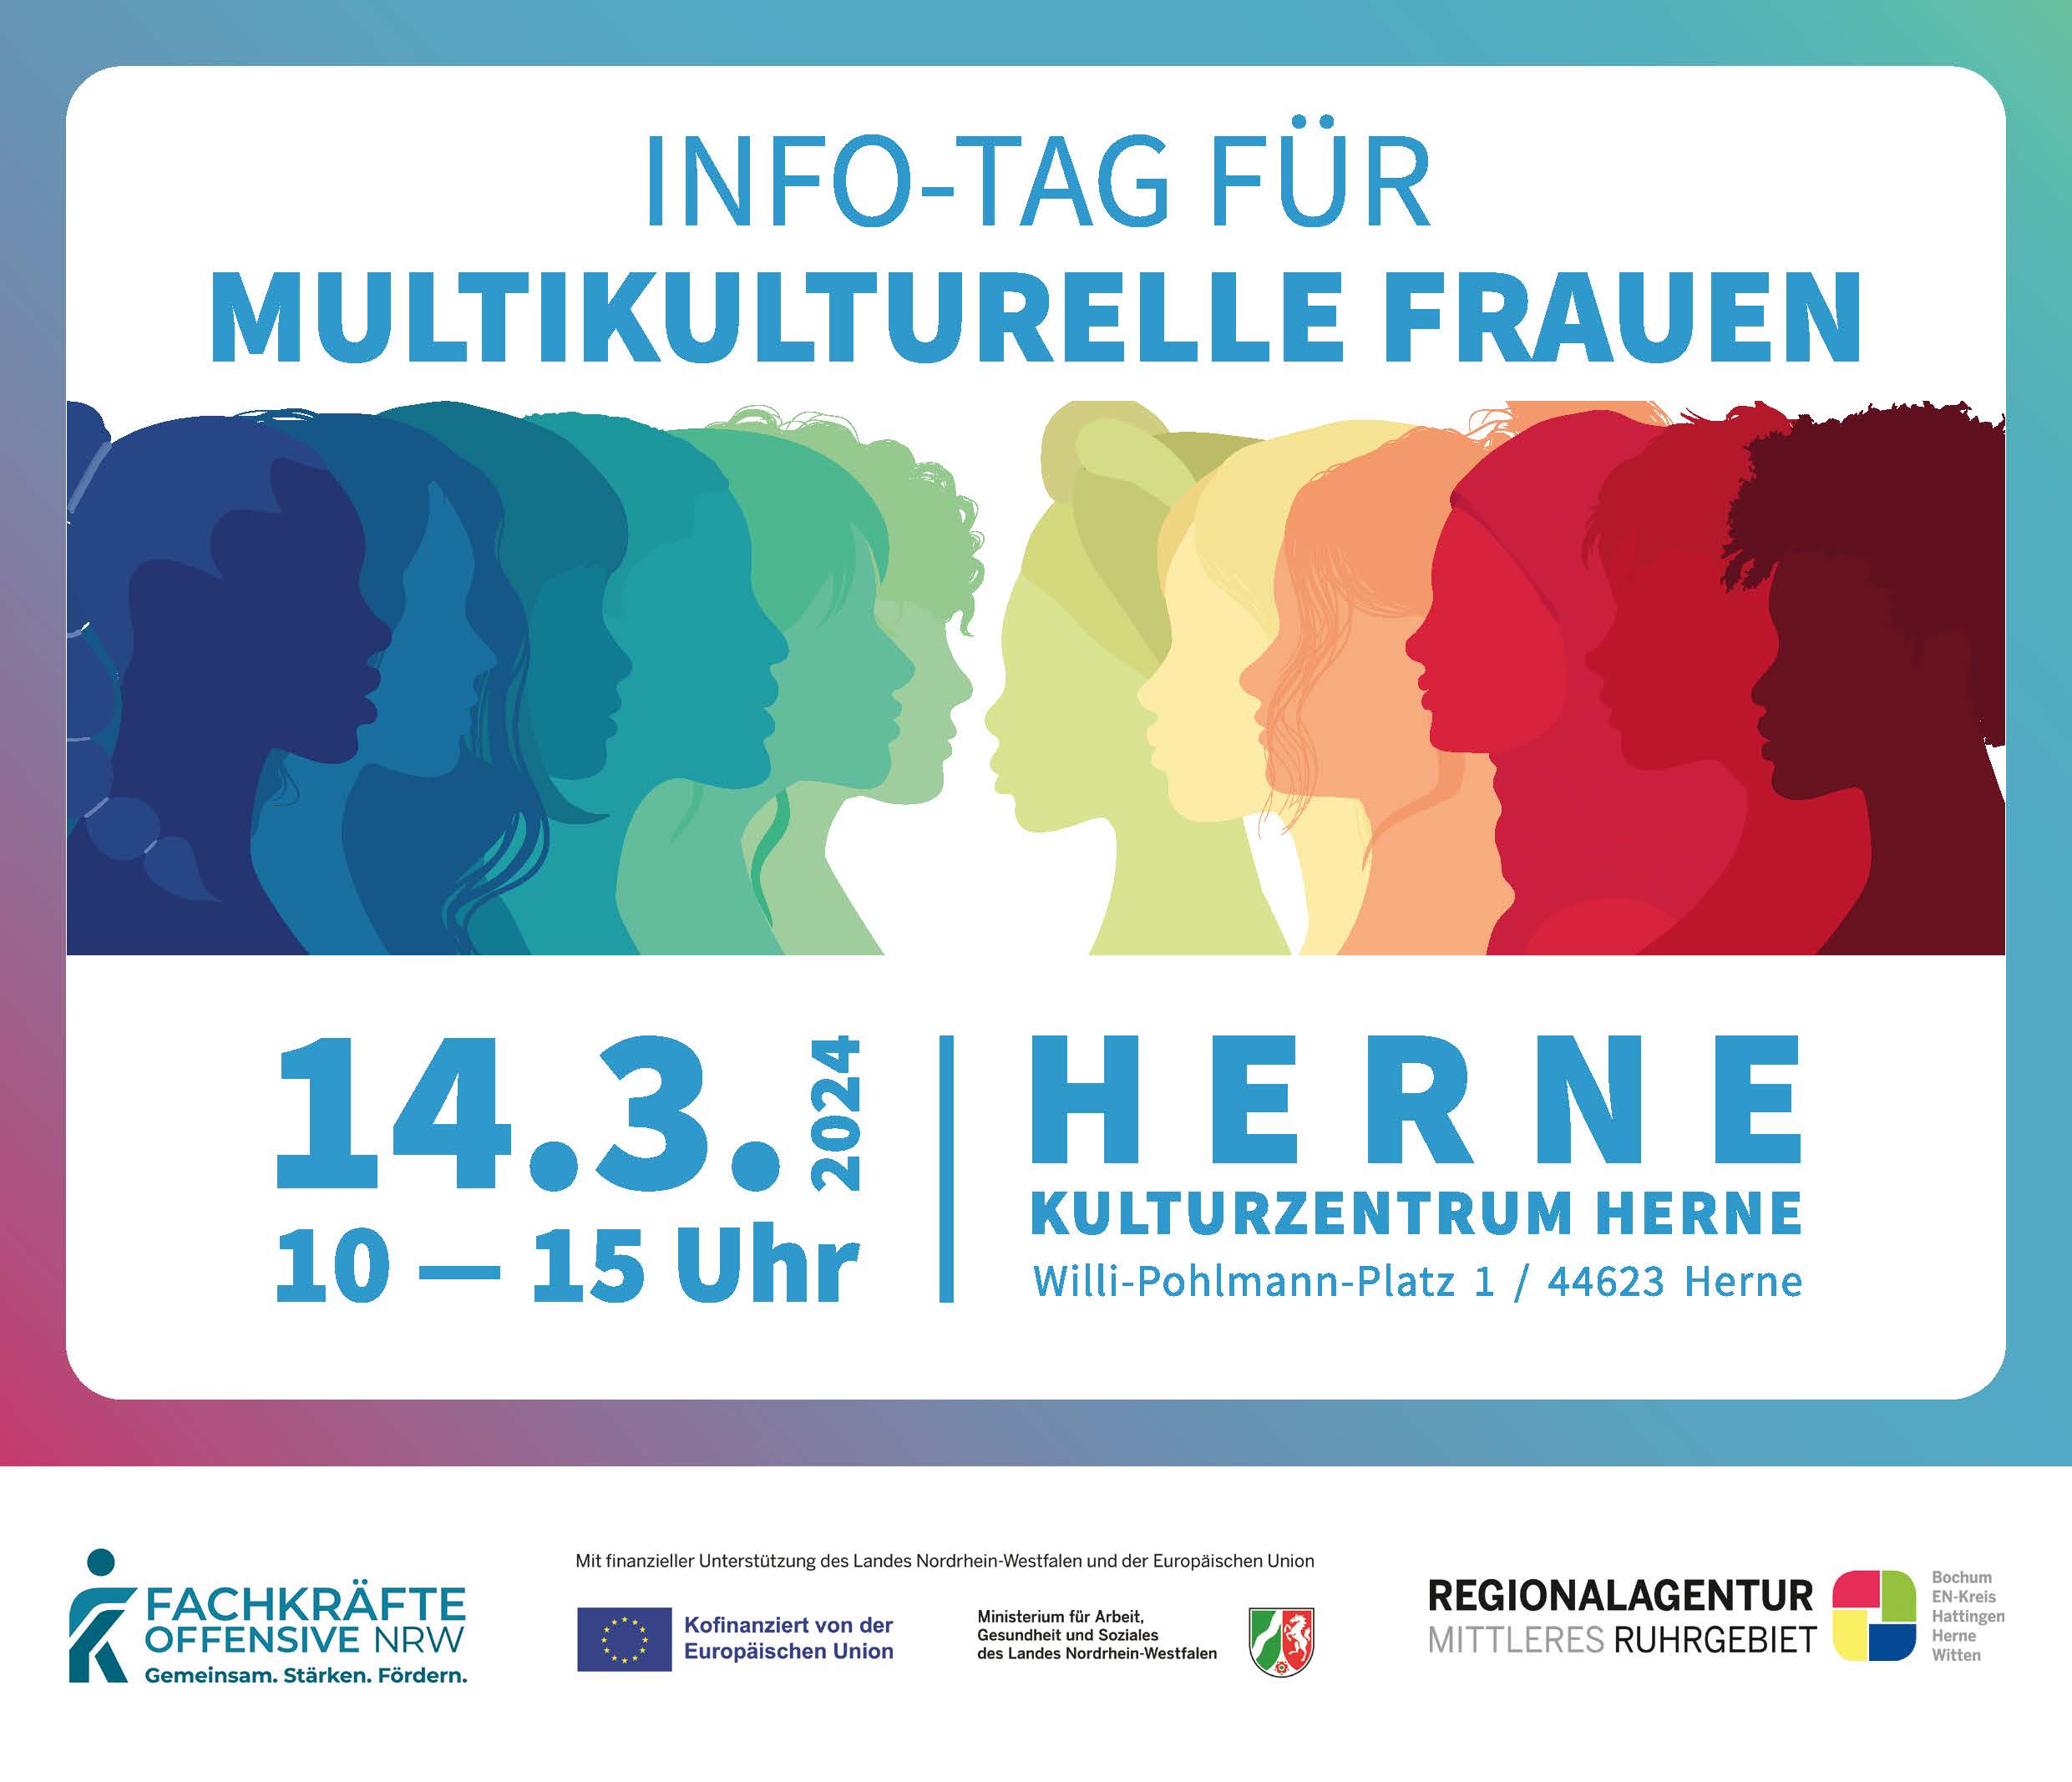 Info-Tag für multikulturelle Frauen in Herne